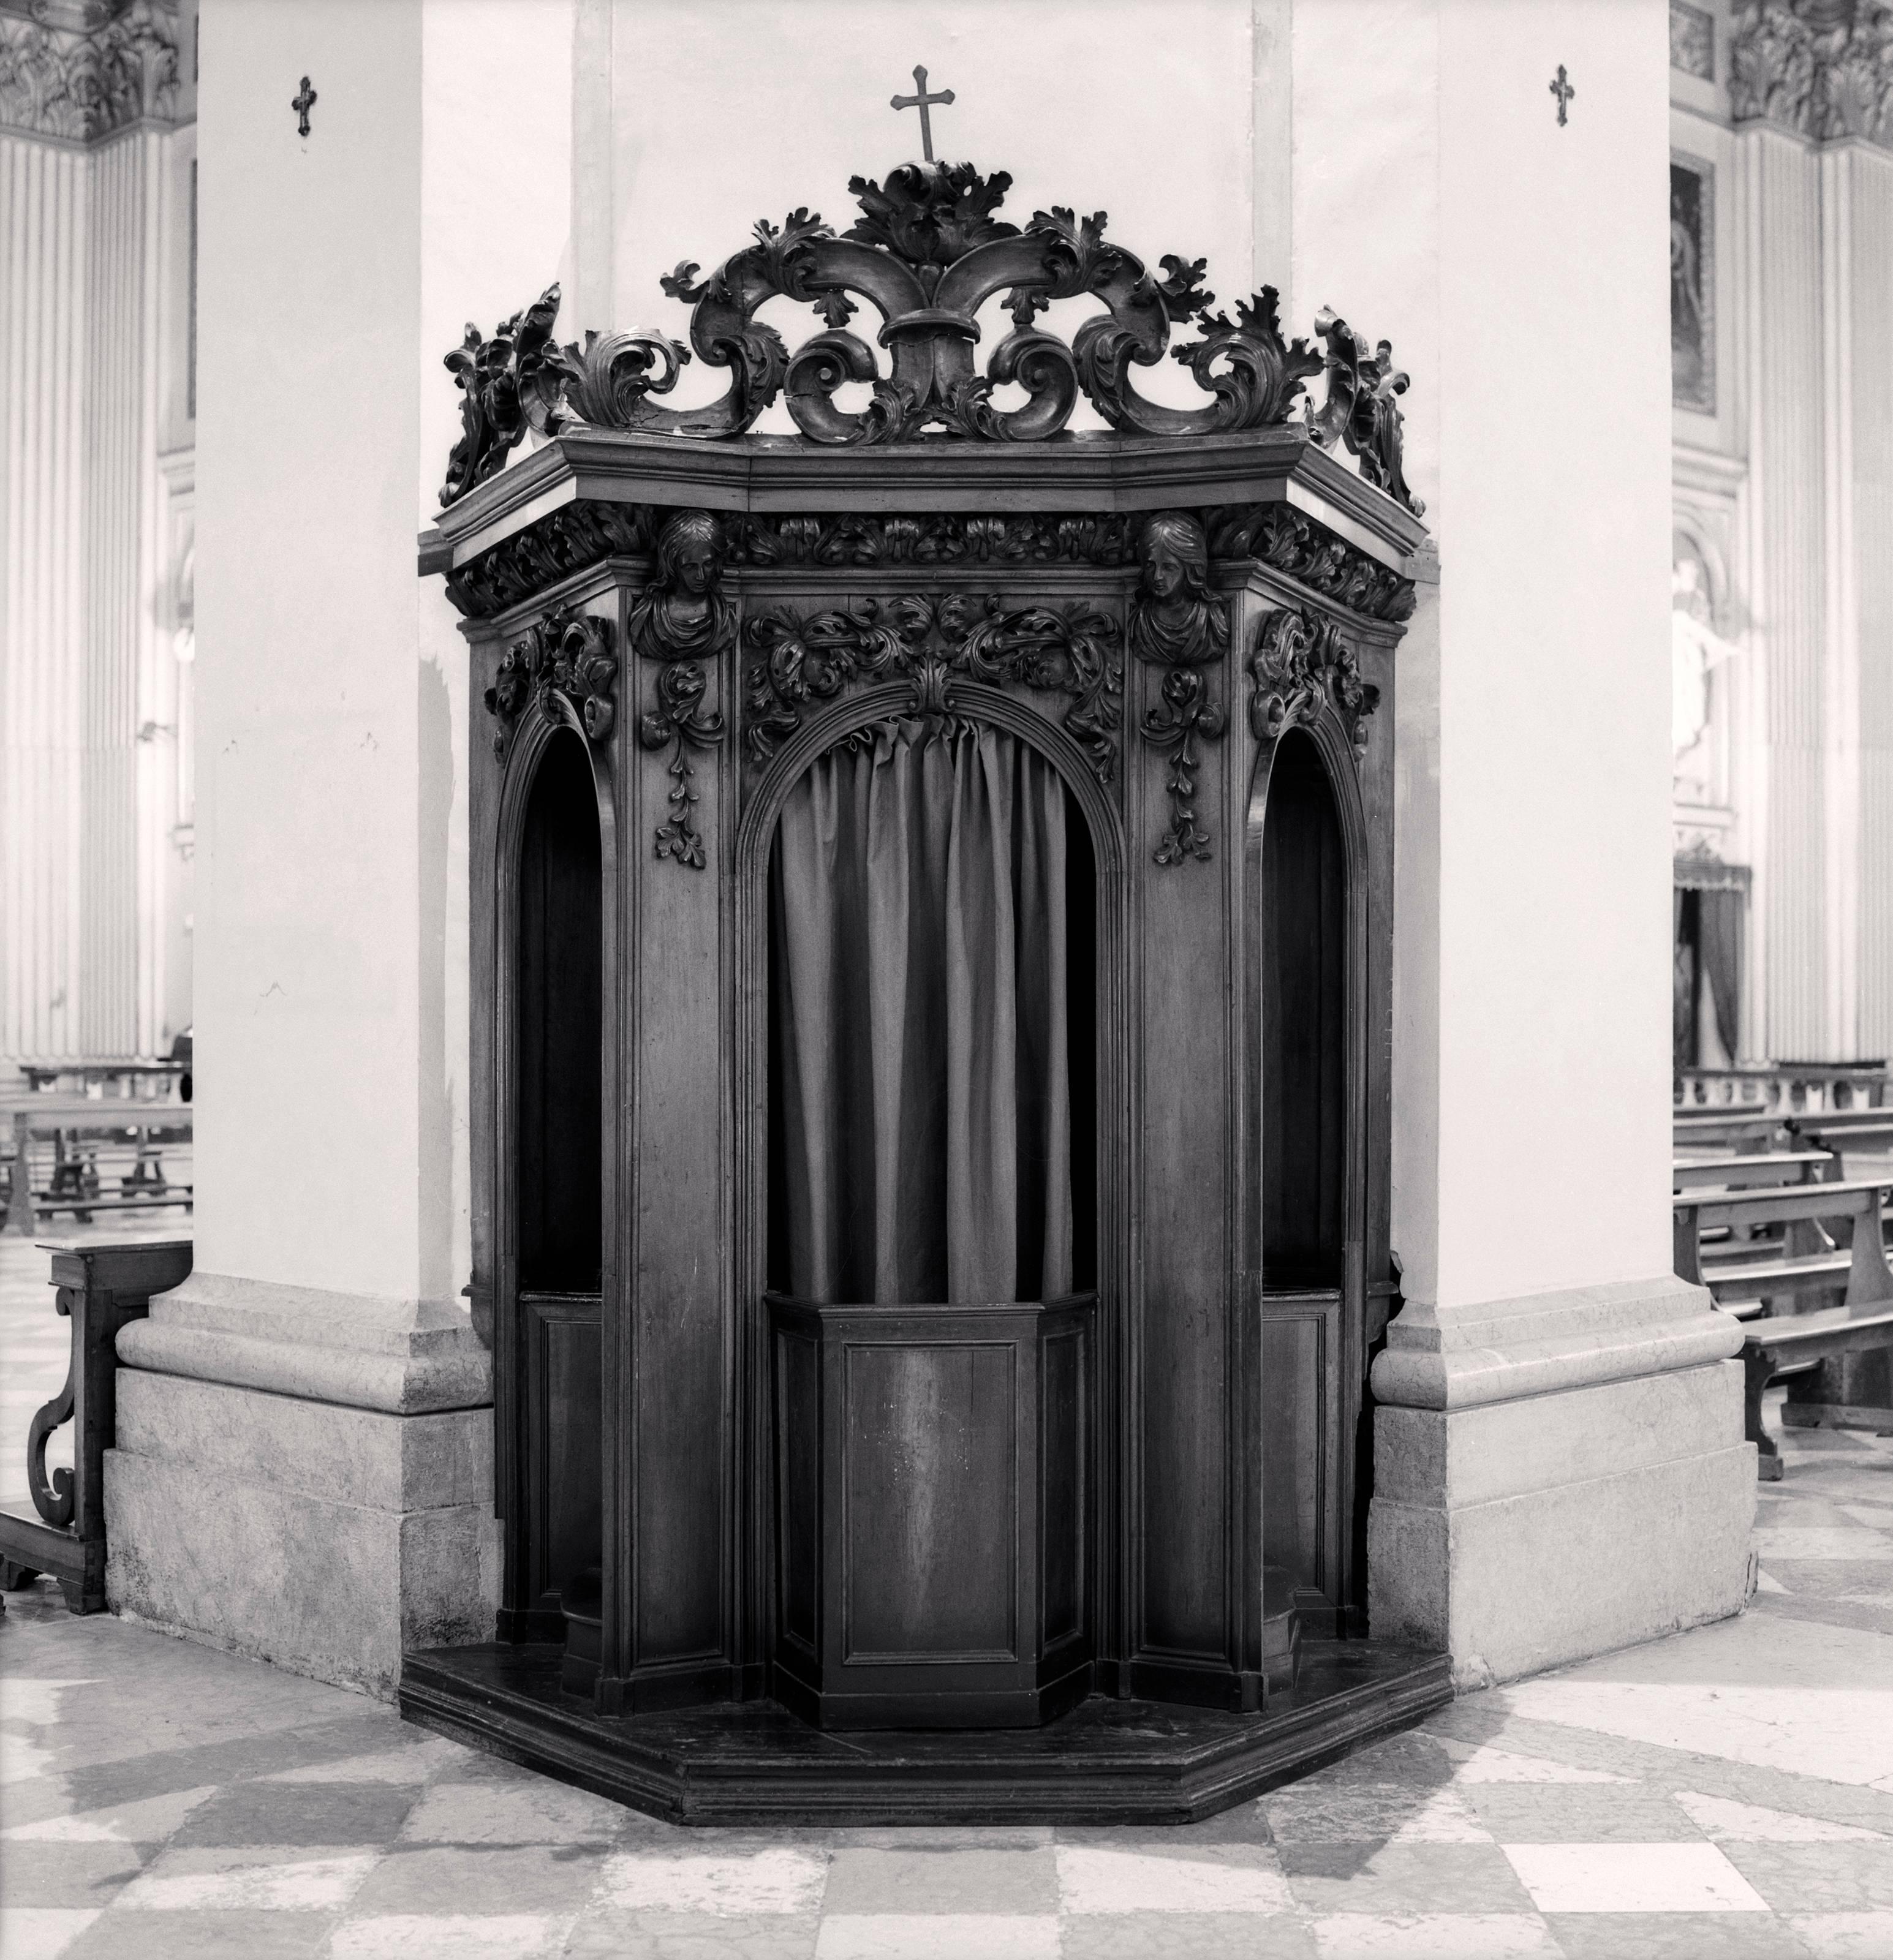 Michael Kenna Black and White Photograph – Confessional, Studie 35, Basilica Della Beata Vergine della Ghiara, Reggio Emilia